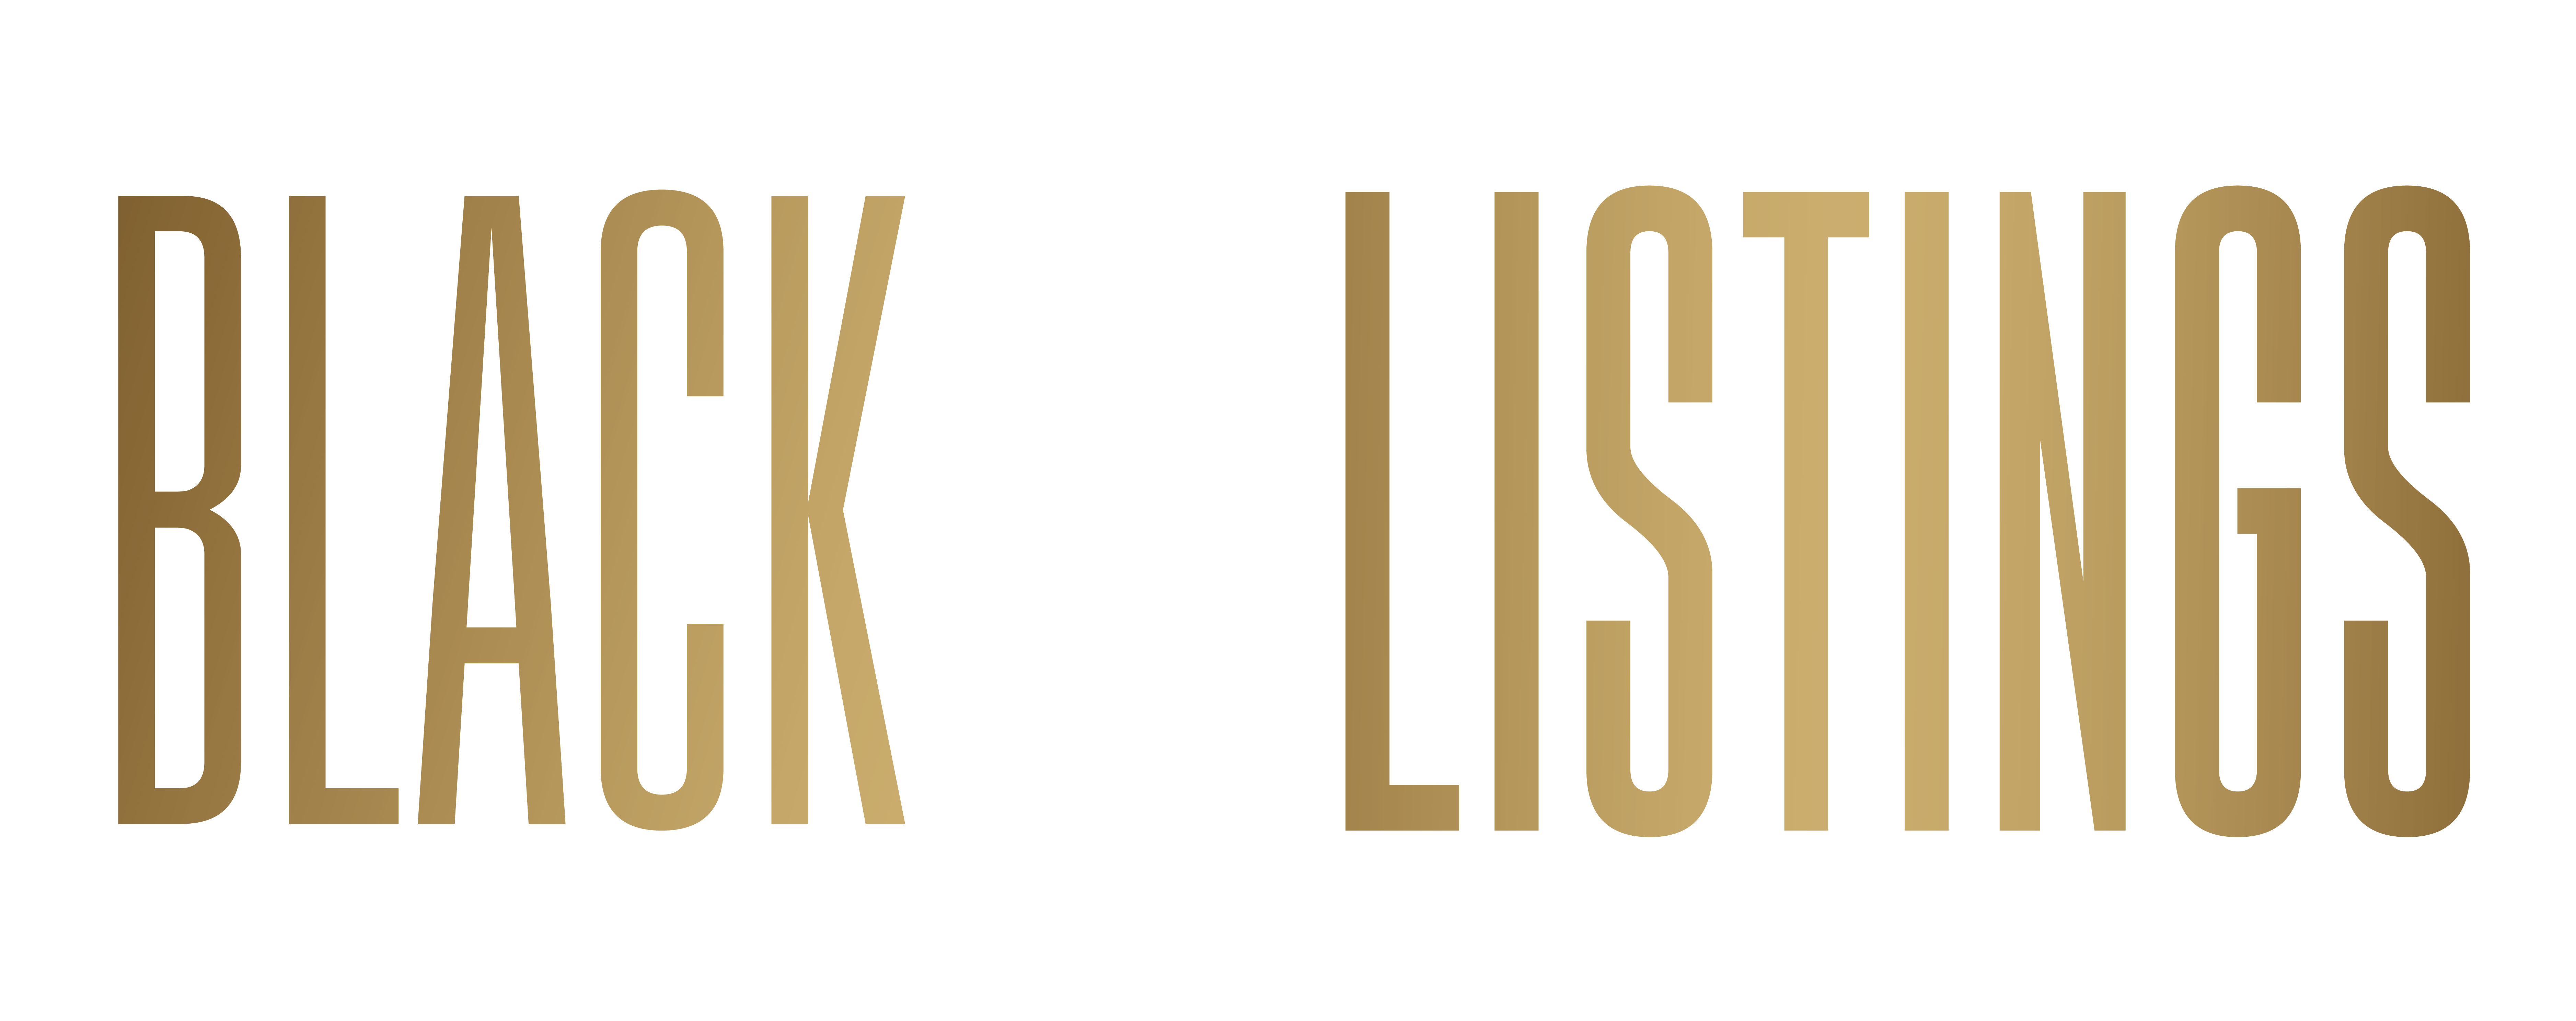 Black Rich Listings